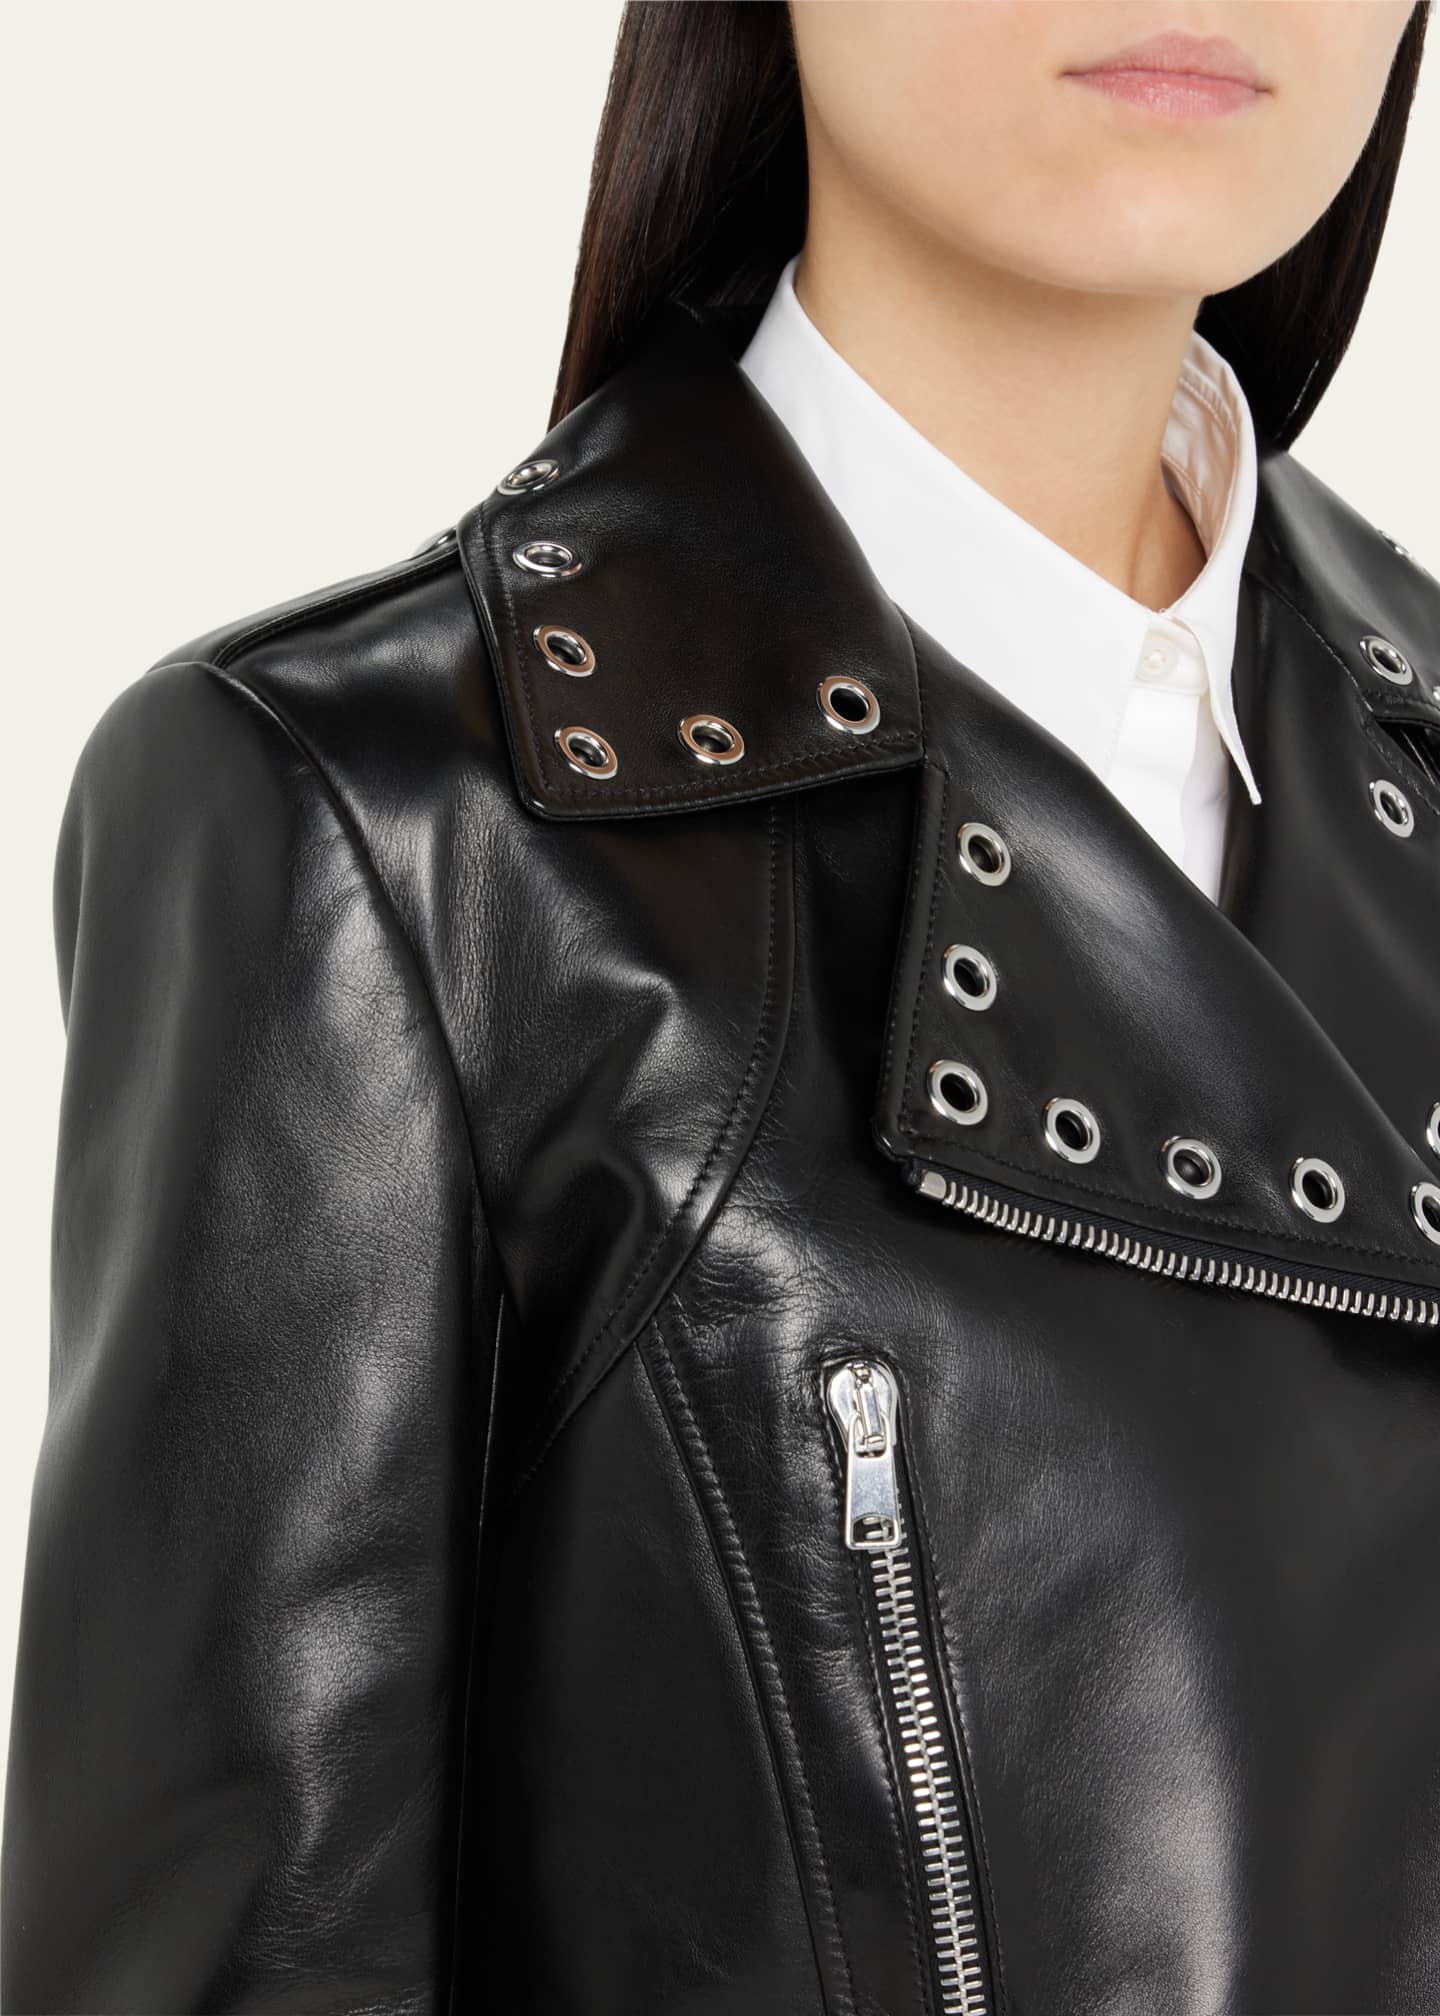 Alexander McQueen Leather Crop Grommet Biker Jacket - Bergdorf Goodman